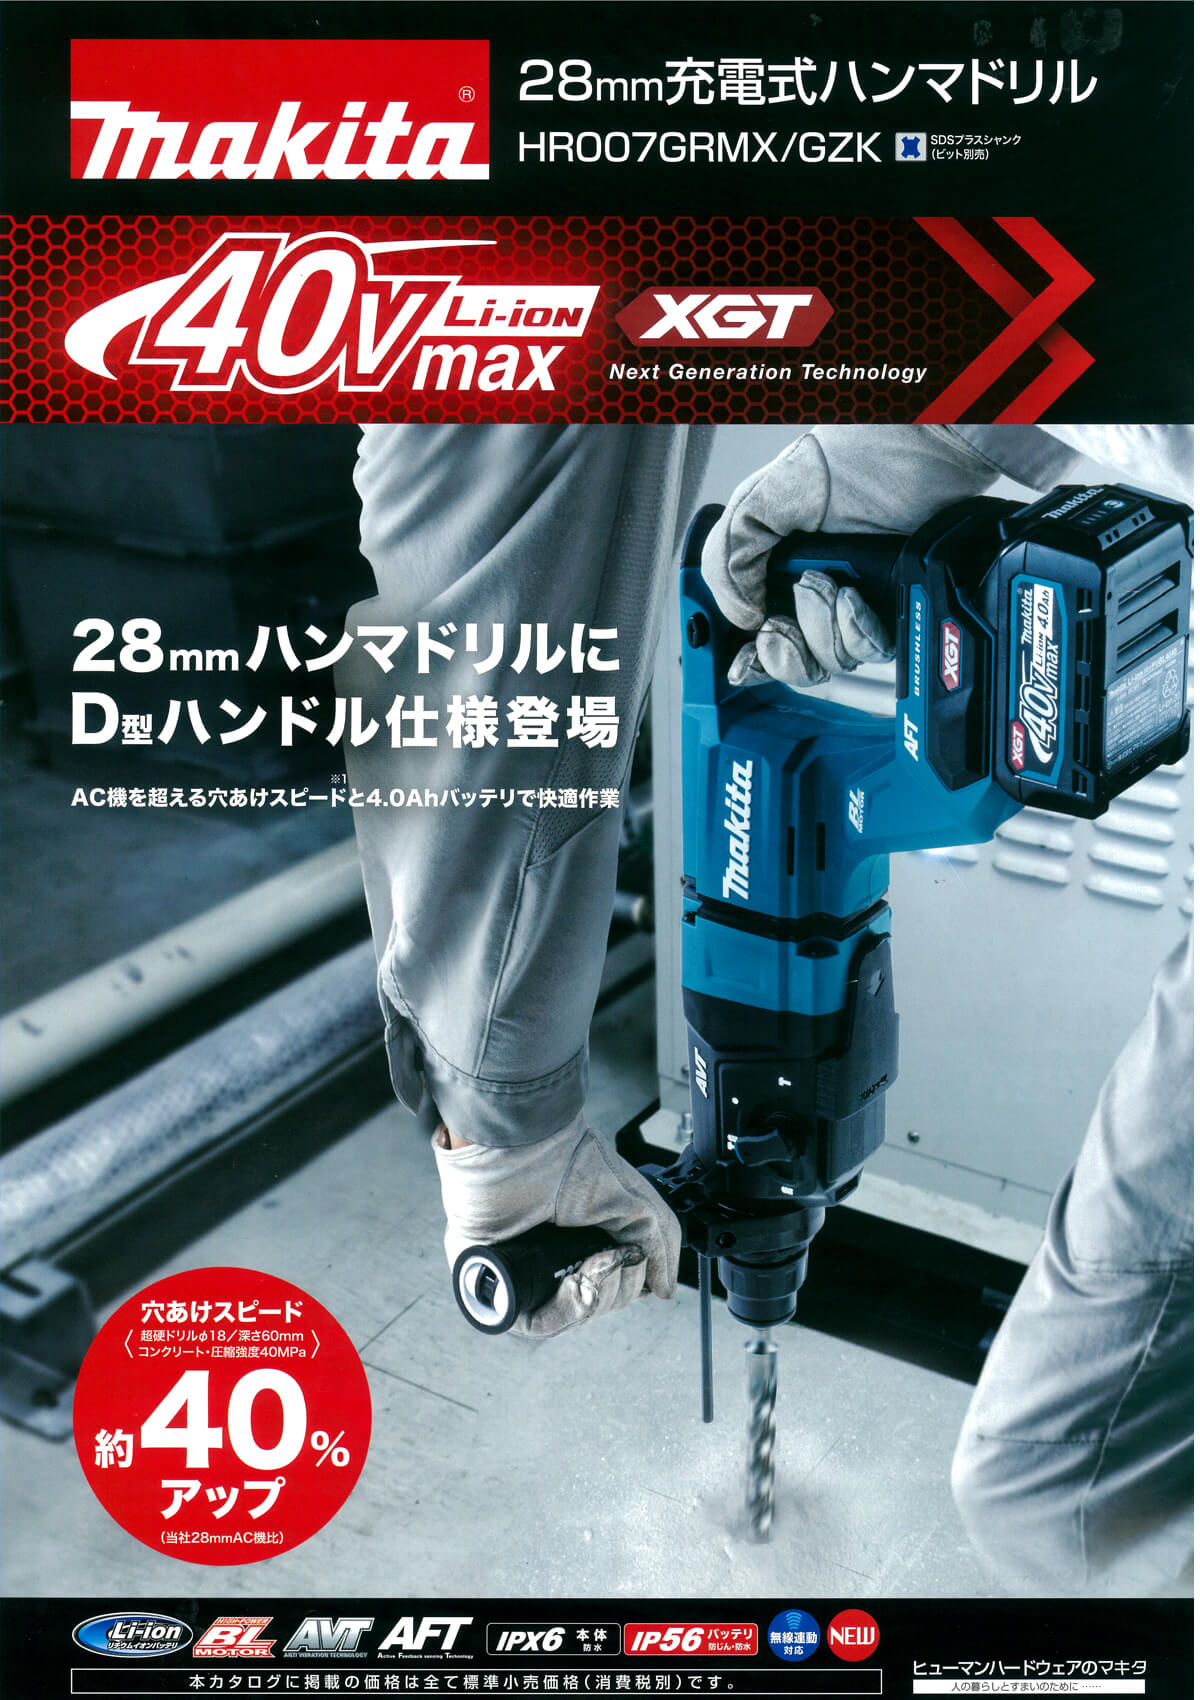 マキタ HR007GRMX 40Vmax 28mm充電式ハンマドリル ウエダ金物【公式サイト】